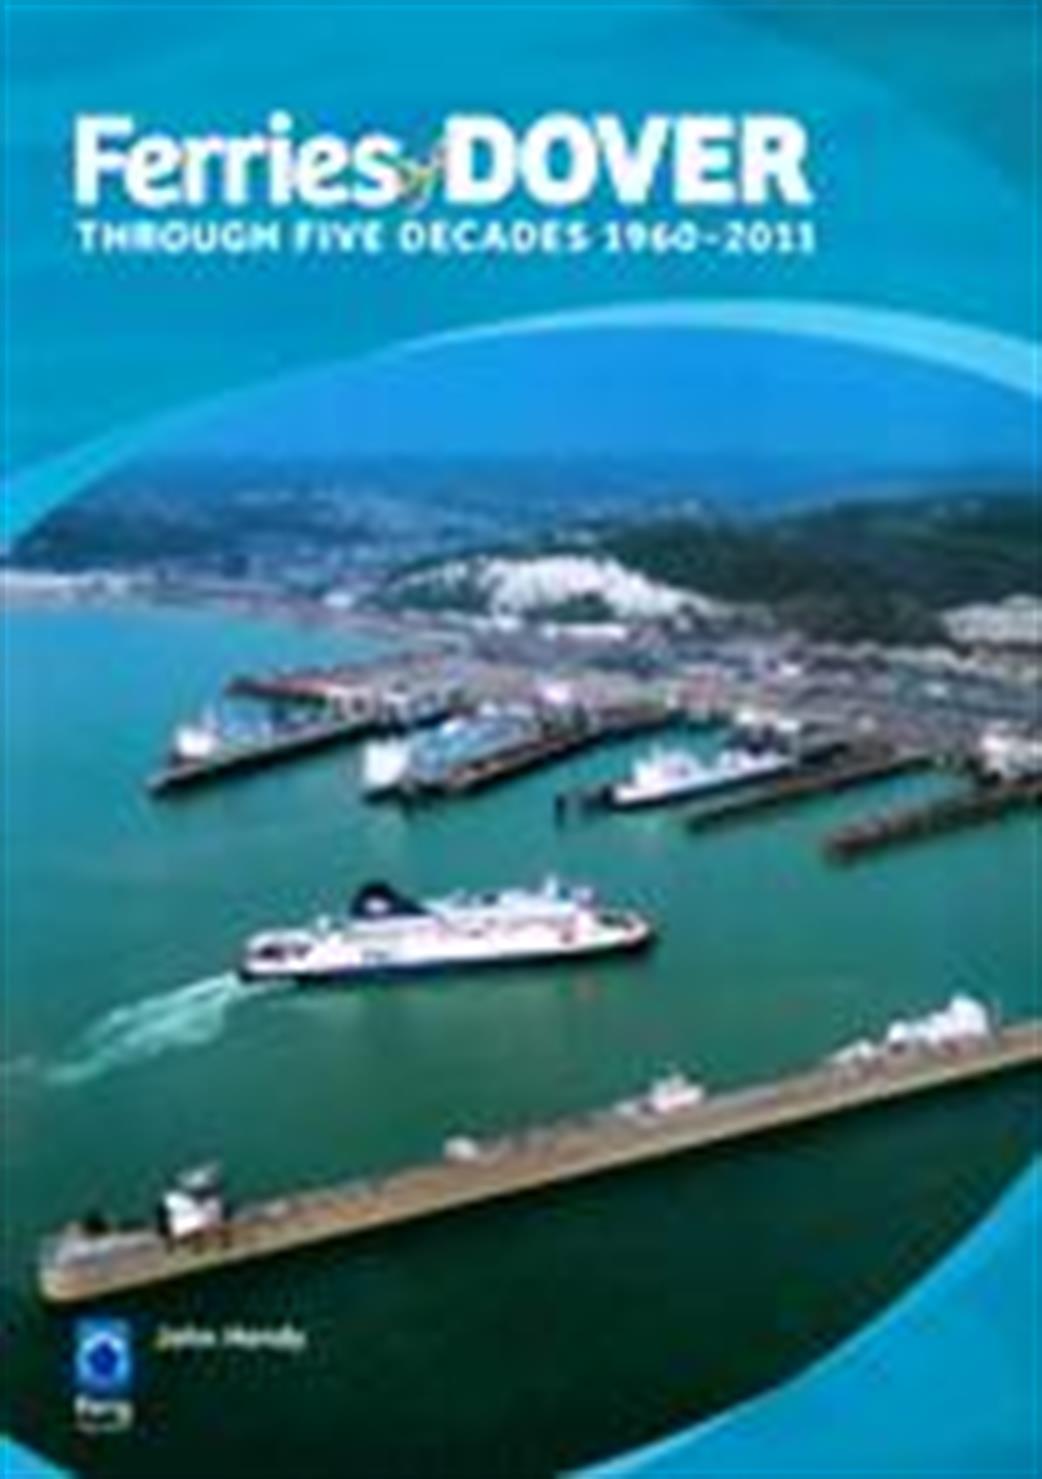 Ian Allan Publishing 9781906608187 Ferries of Dover by John Hendy